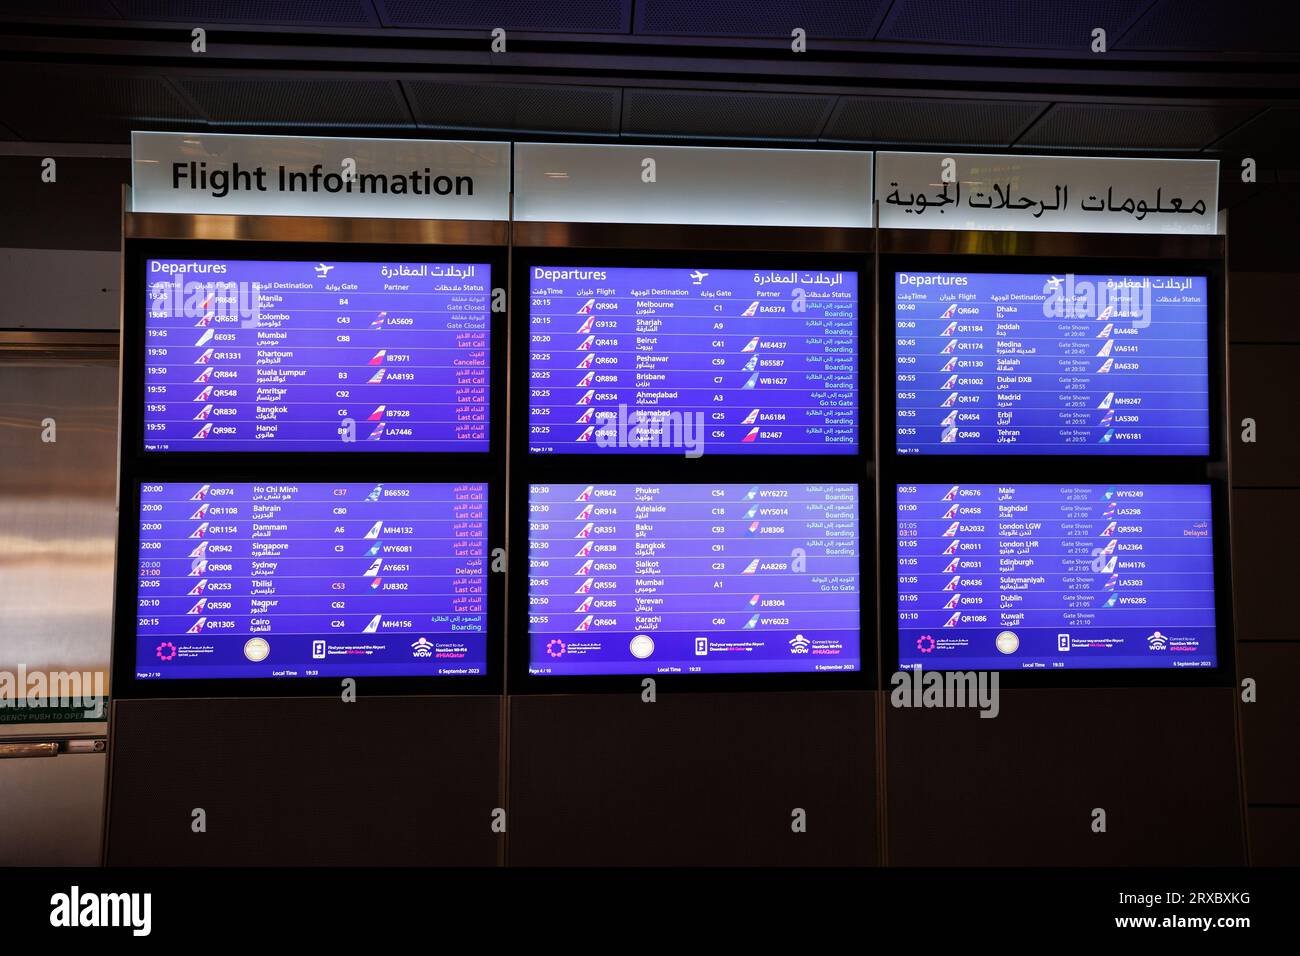 Des écrans numériques affichent les informations de départ et d'arrivée des vols à l'aéroport international Hamad, Doha, Qatar. Banque D'Images